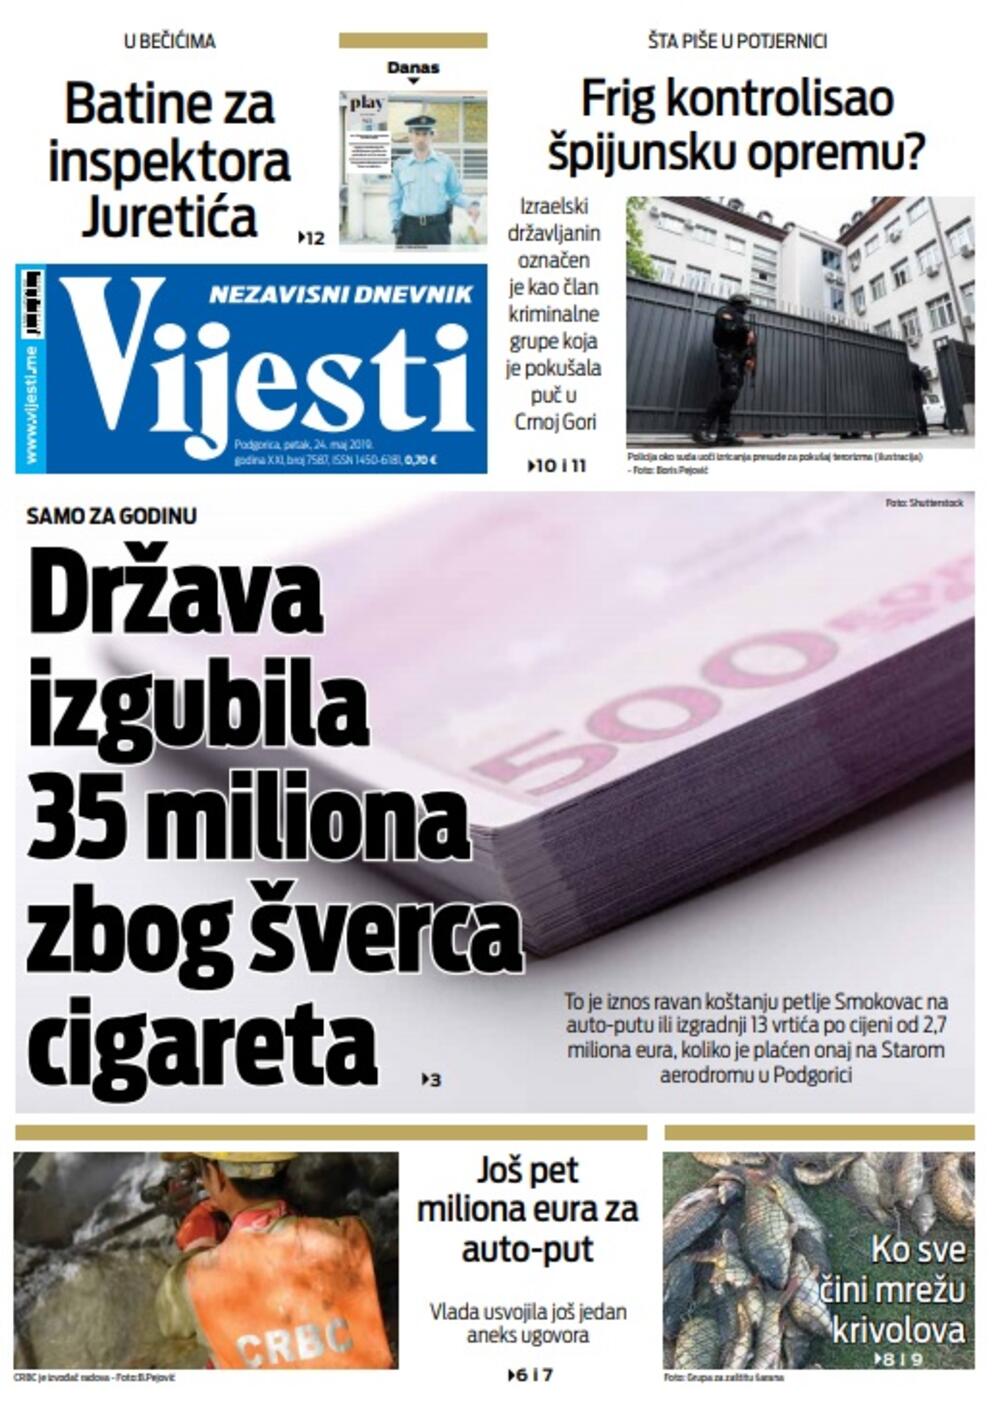 Naslovna strana "Vijesti" za 24. maj, Foto: Vijesti